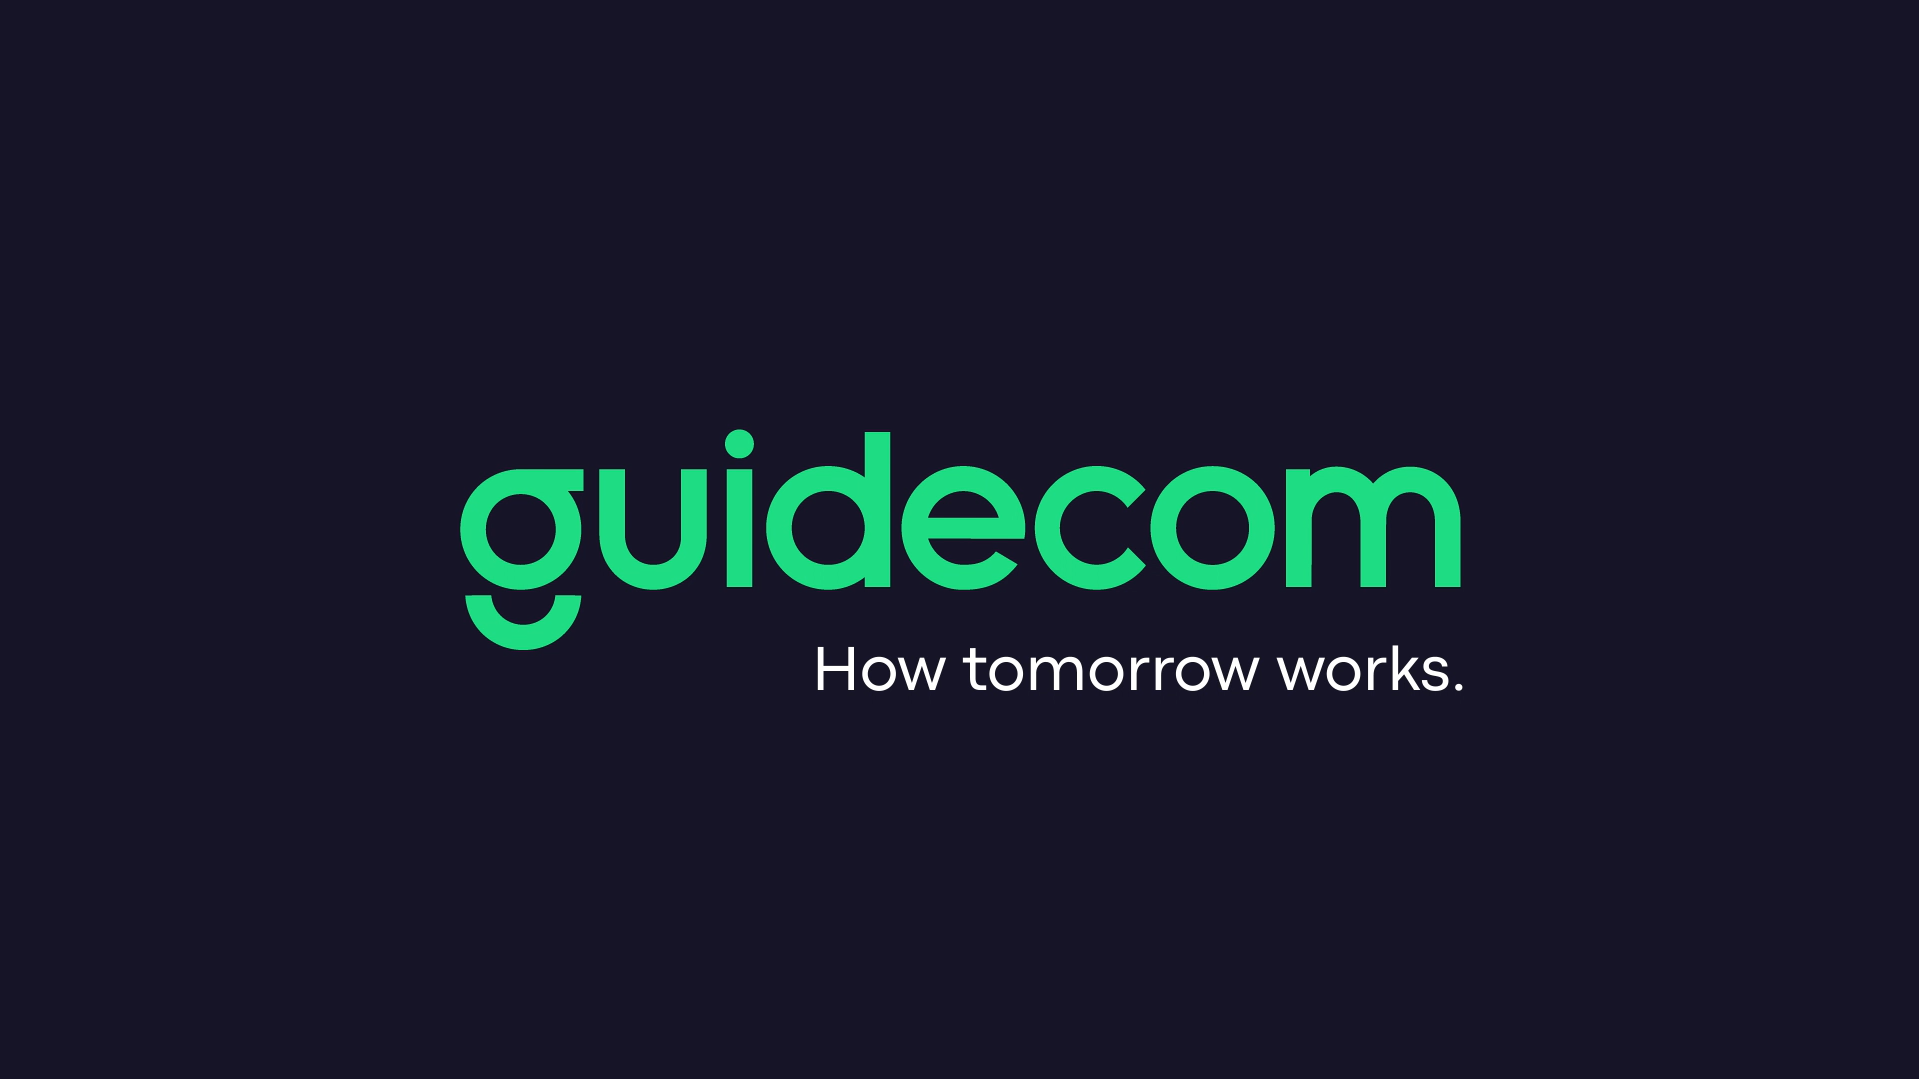 GuideCom